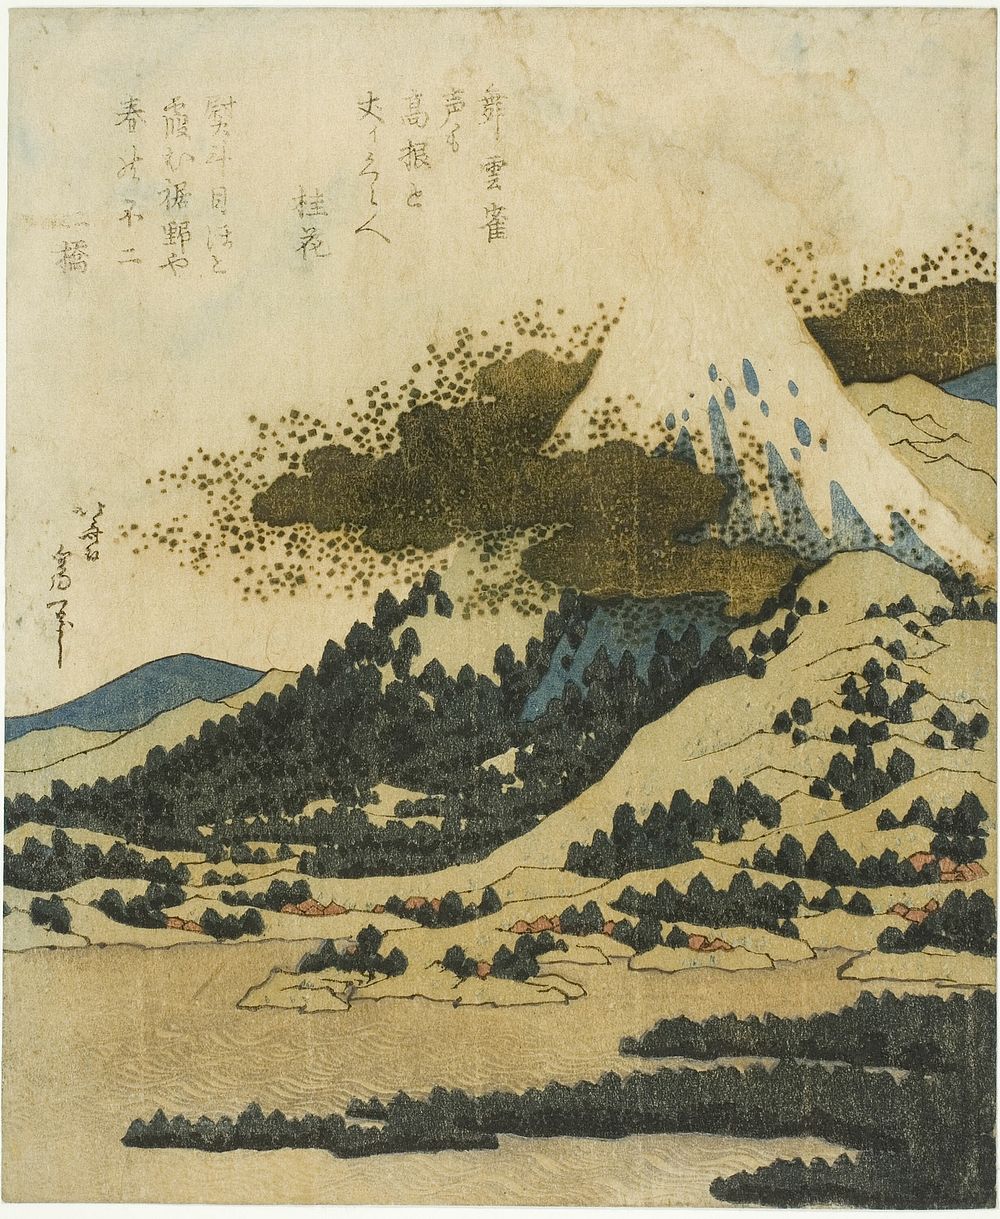 Mount Fuji from Lake Ashi in Hakone by Katsushika Hokusai